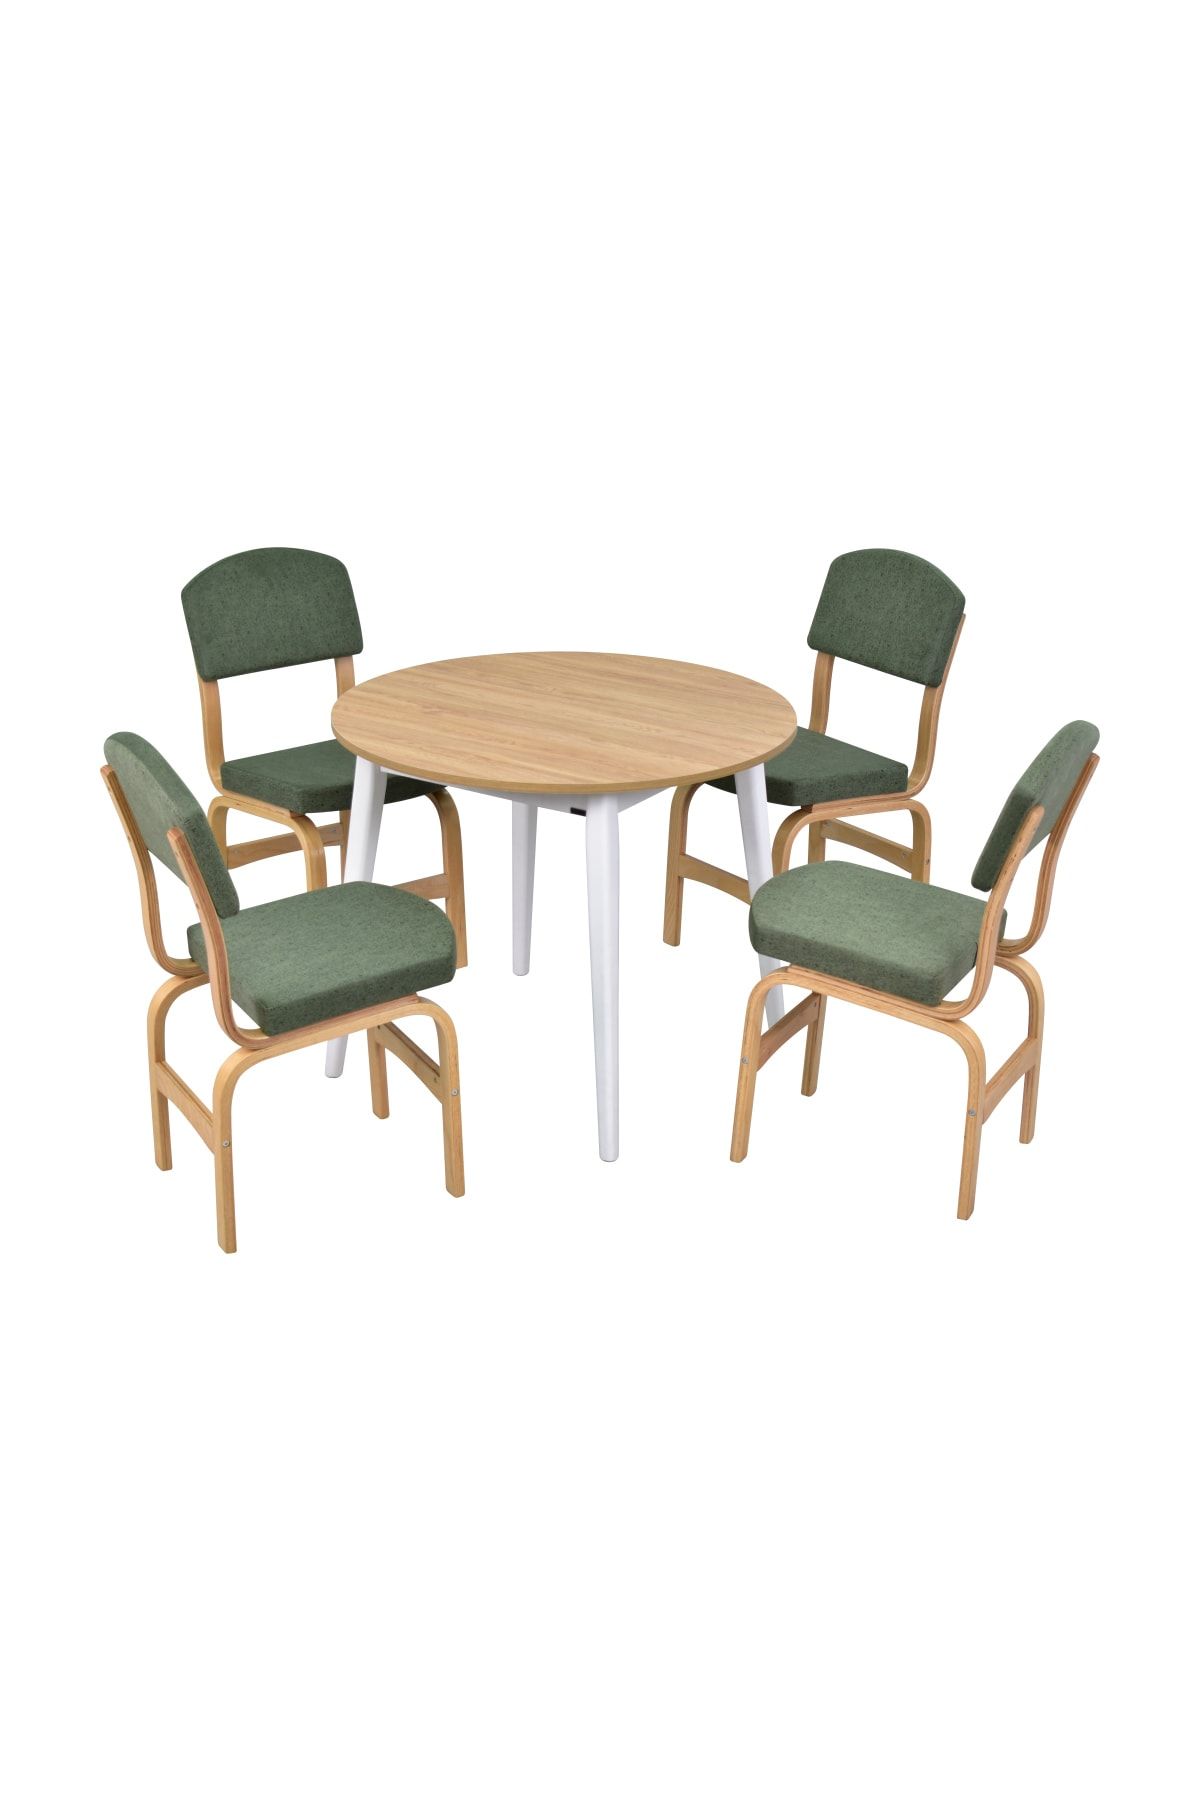 VİLİNZE Ege Sandalye Avanos Mdf Yuvarlak Ahşap Mutfak Masası Takımı - 90x90 Cm